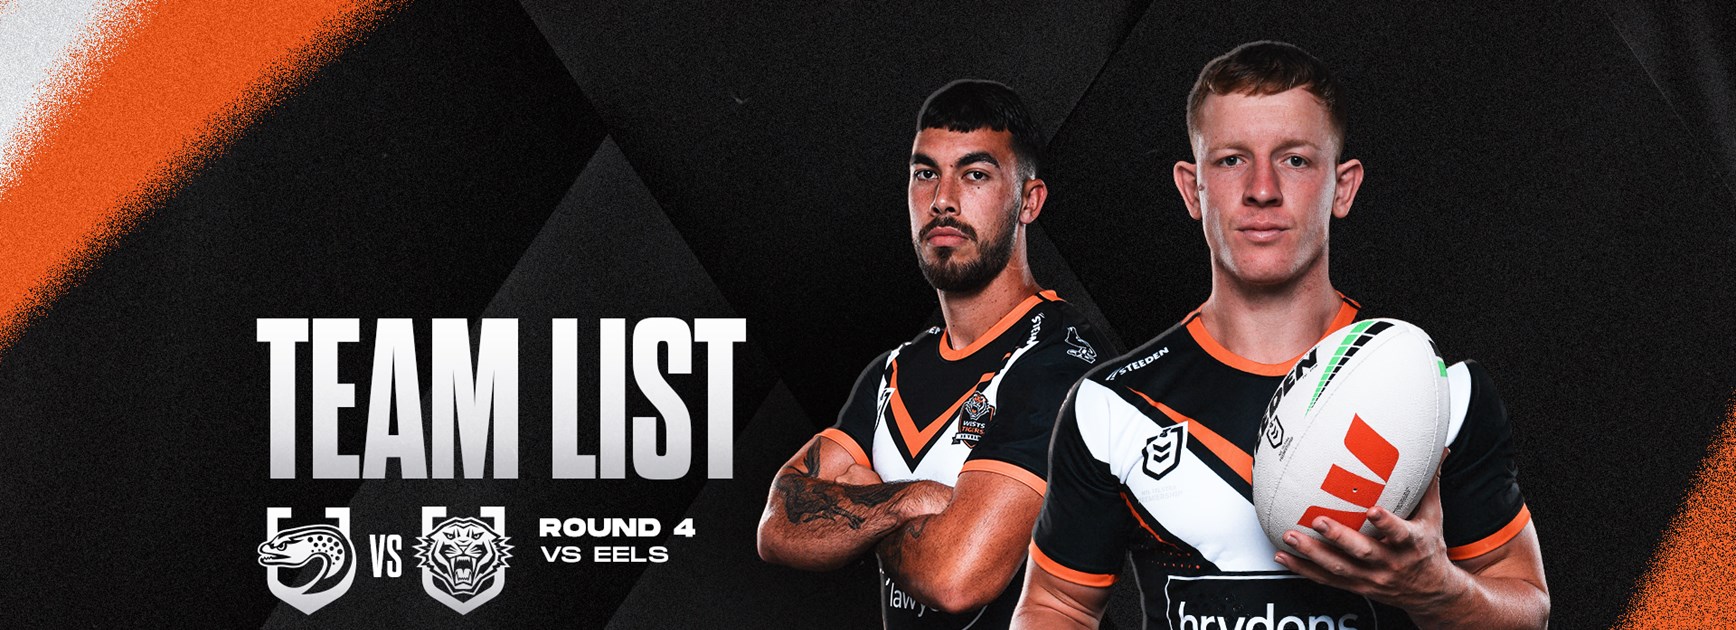 Team List: NRL Round 4 vs Eels